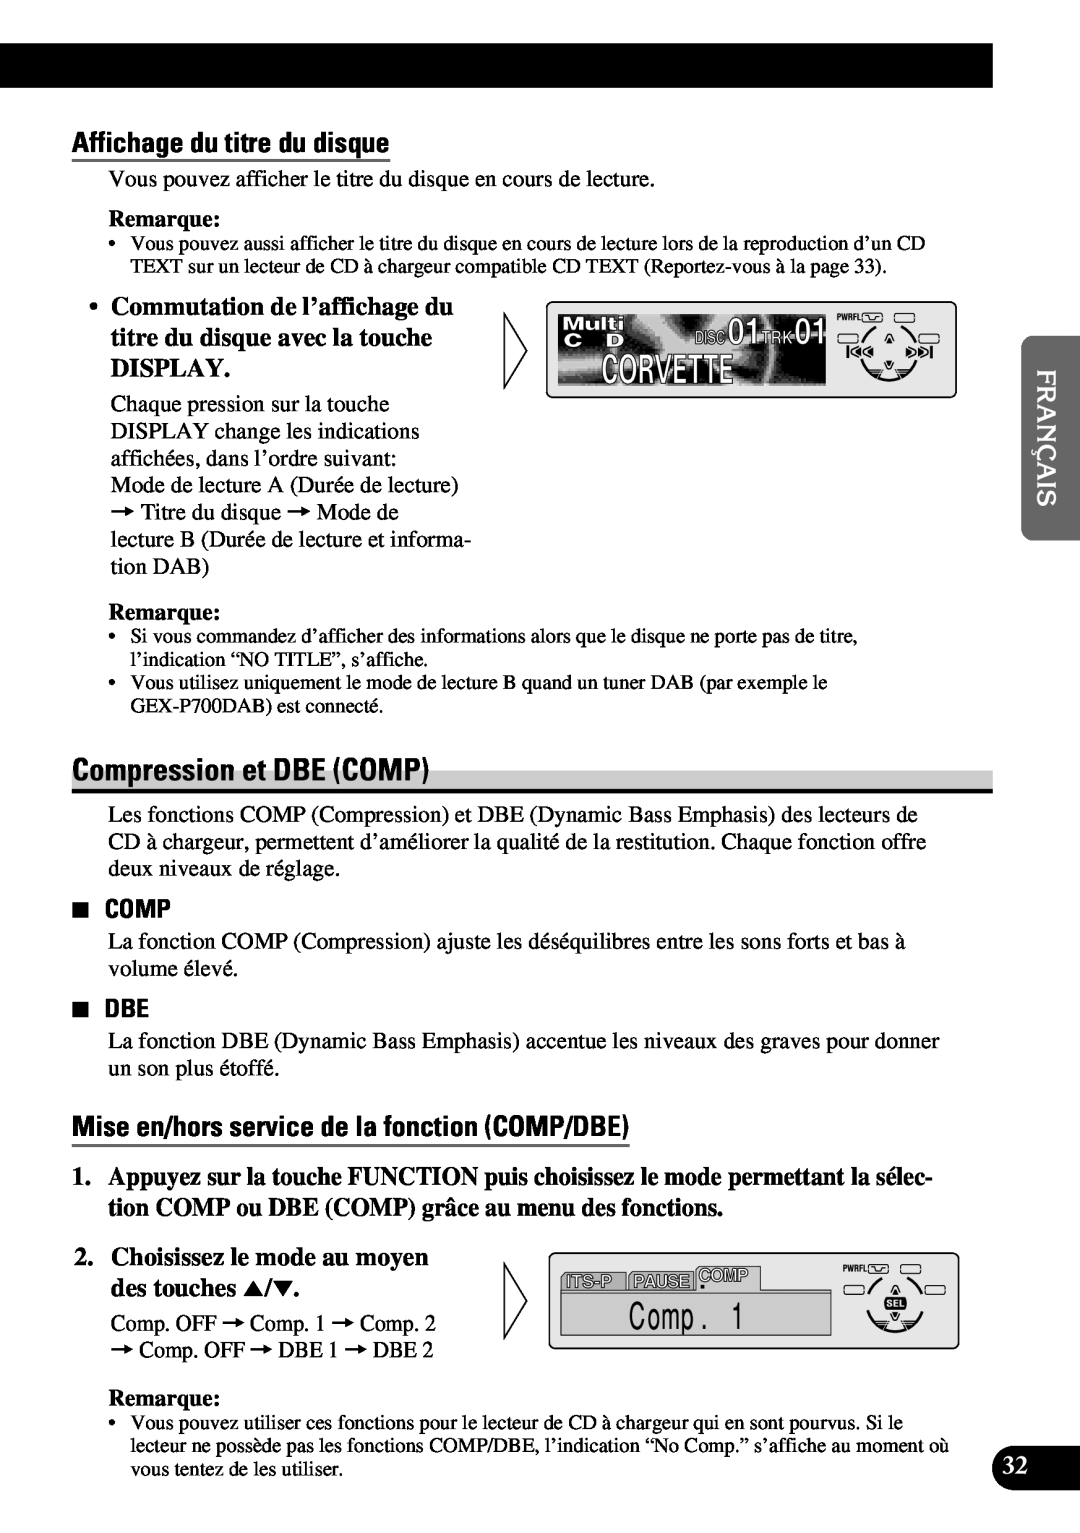 Pioneer DEH-P630 Compression et DBE COMP, Affichage du titre du disque, Mise en/hors service de la fonction COMP/DBE 